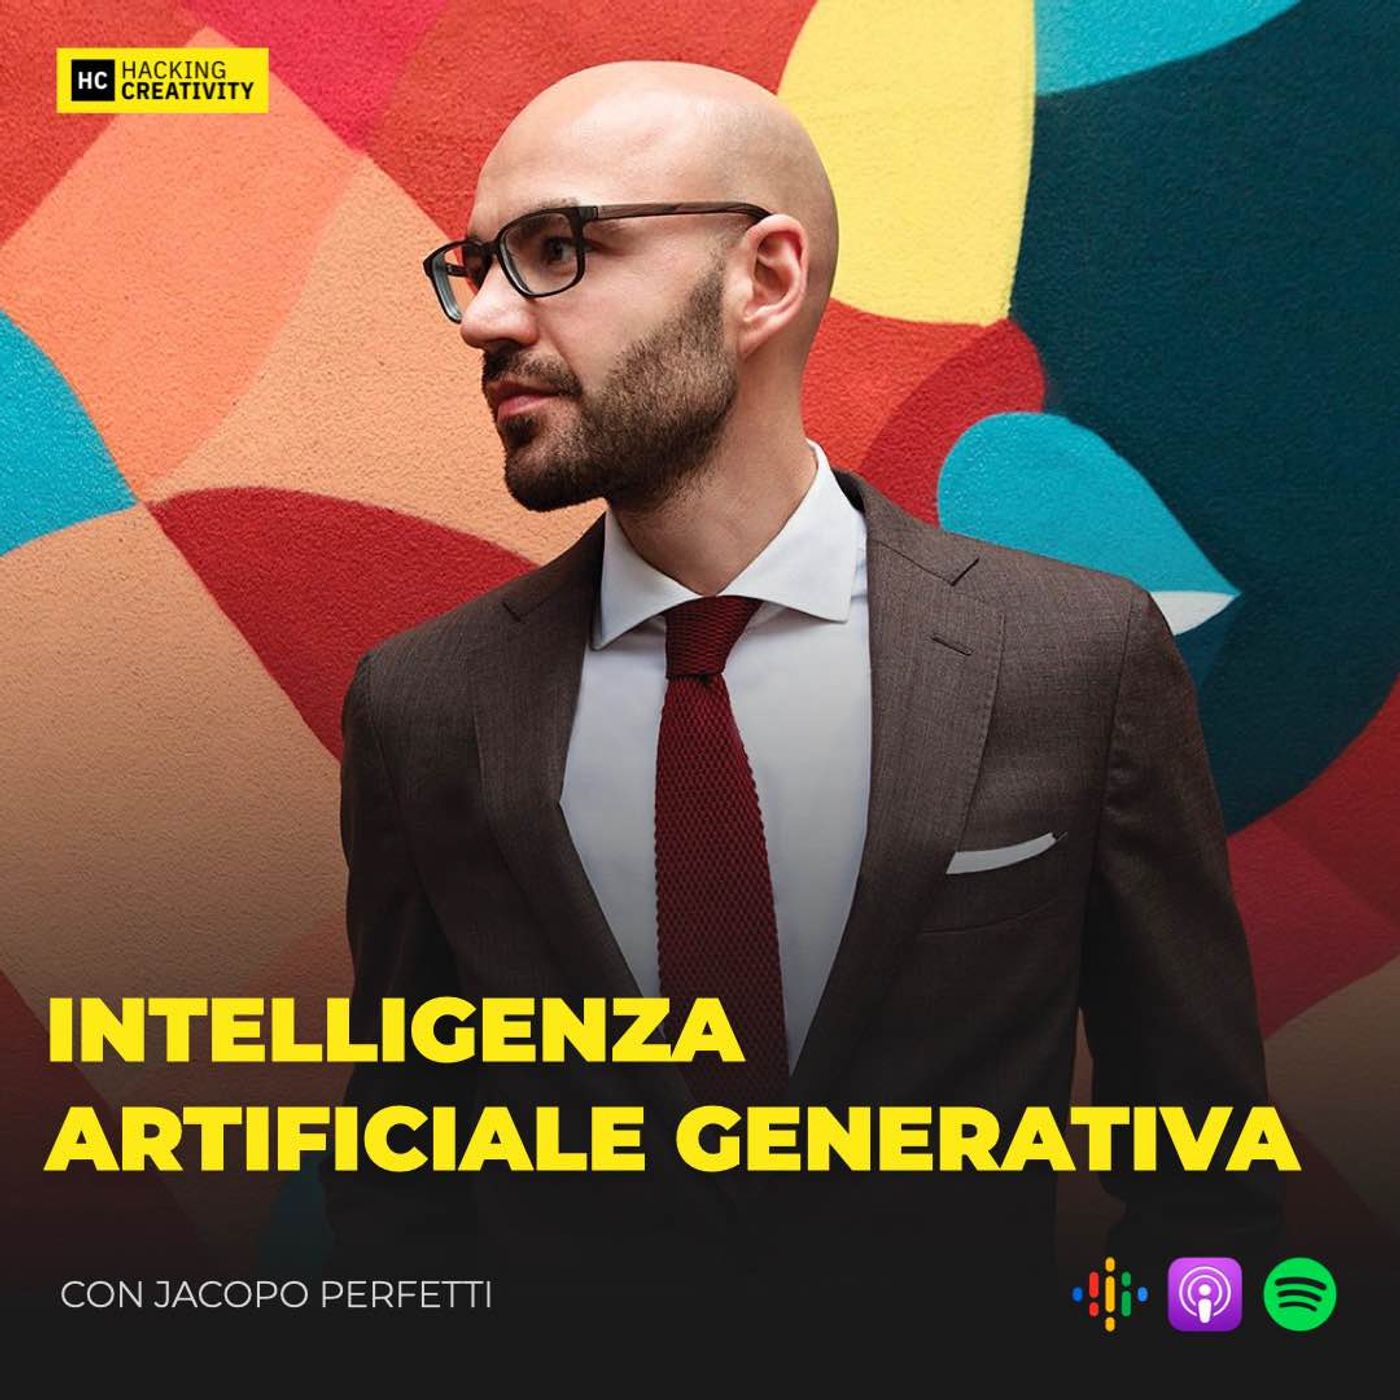 143 - Intelligenza Artificiale Generativa con Jacopo Perfetti